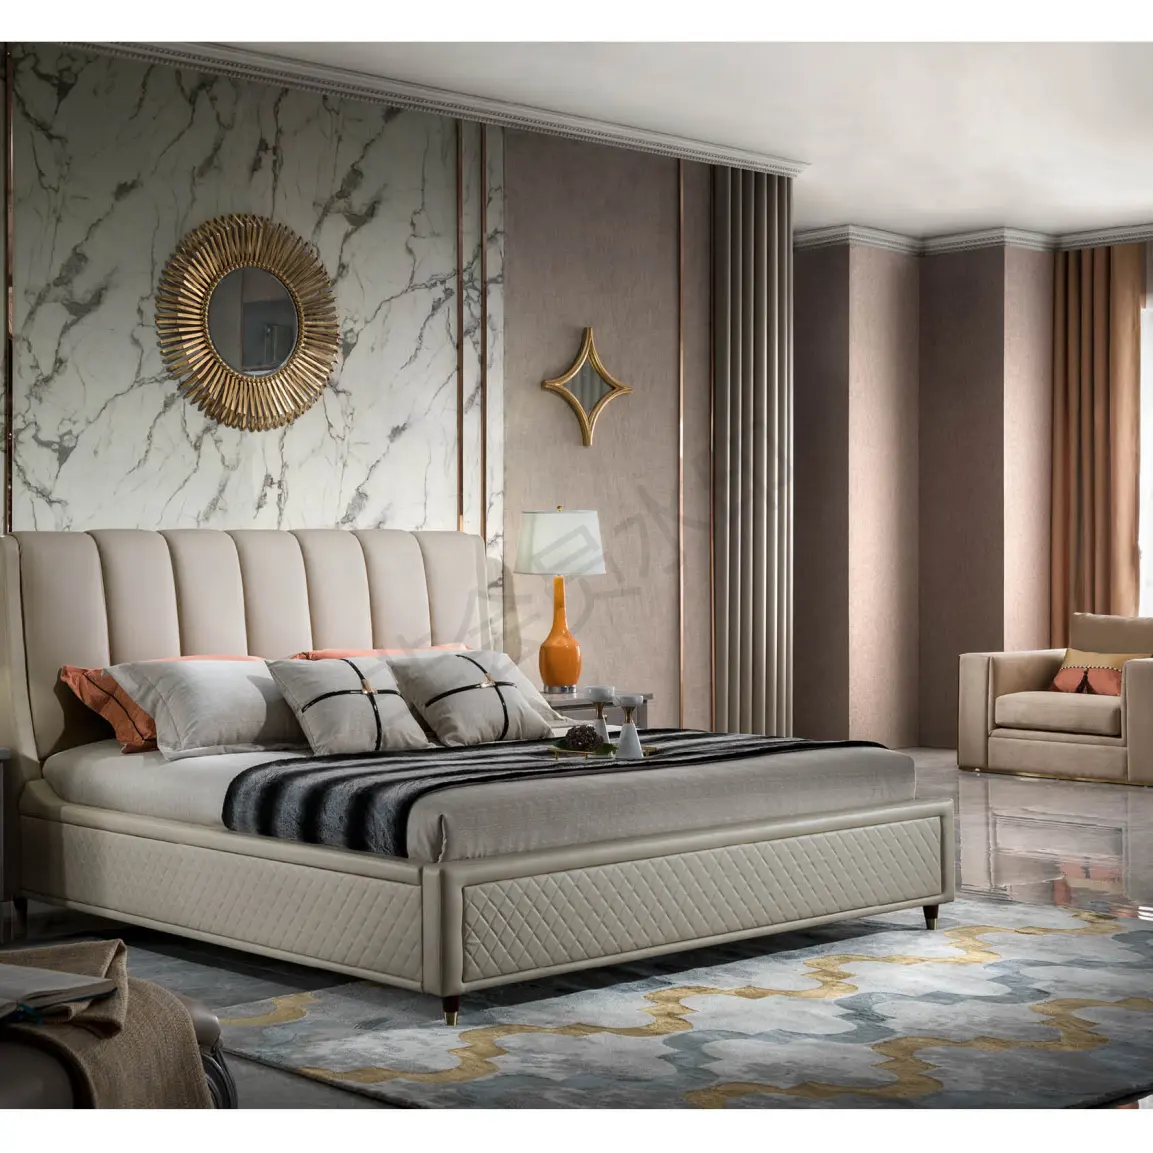 CBMmart-camas King Size de estilo europeo talladas, muebles de dormitorio de lujo francés, italiano, real, juegos de dormitorio de madera